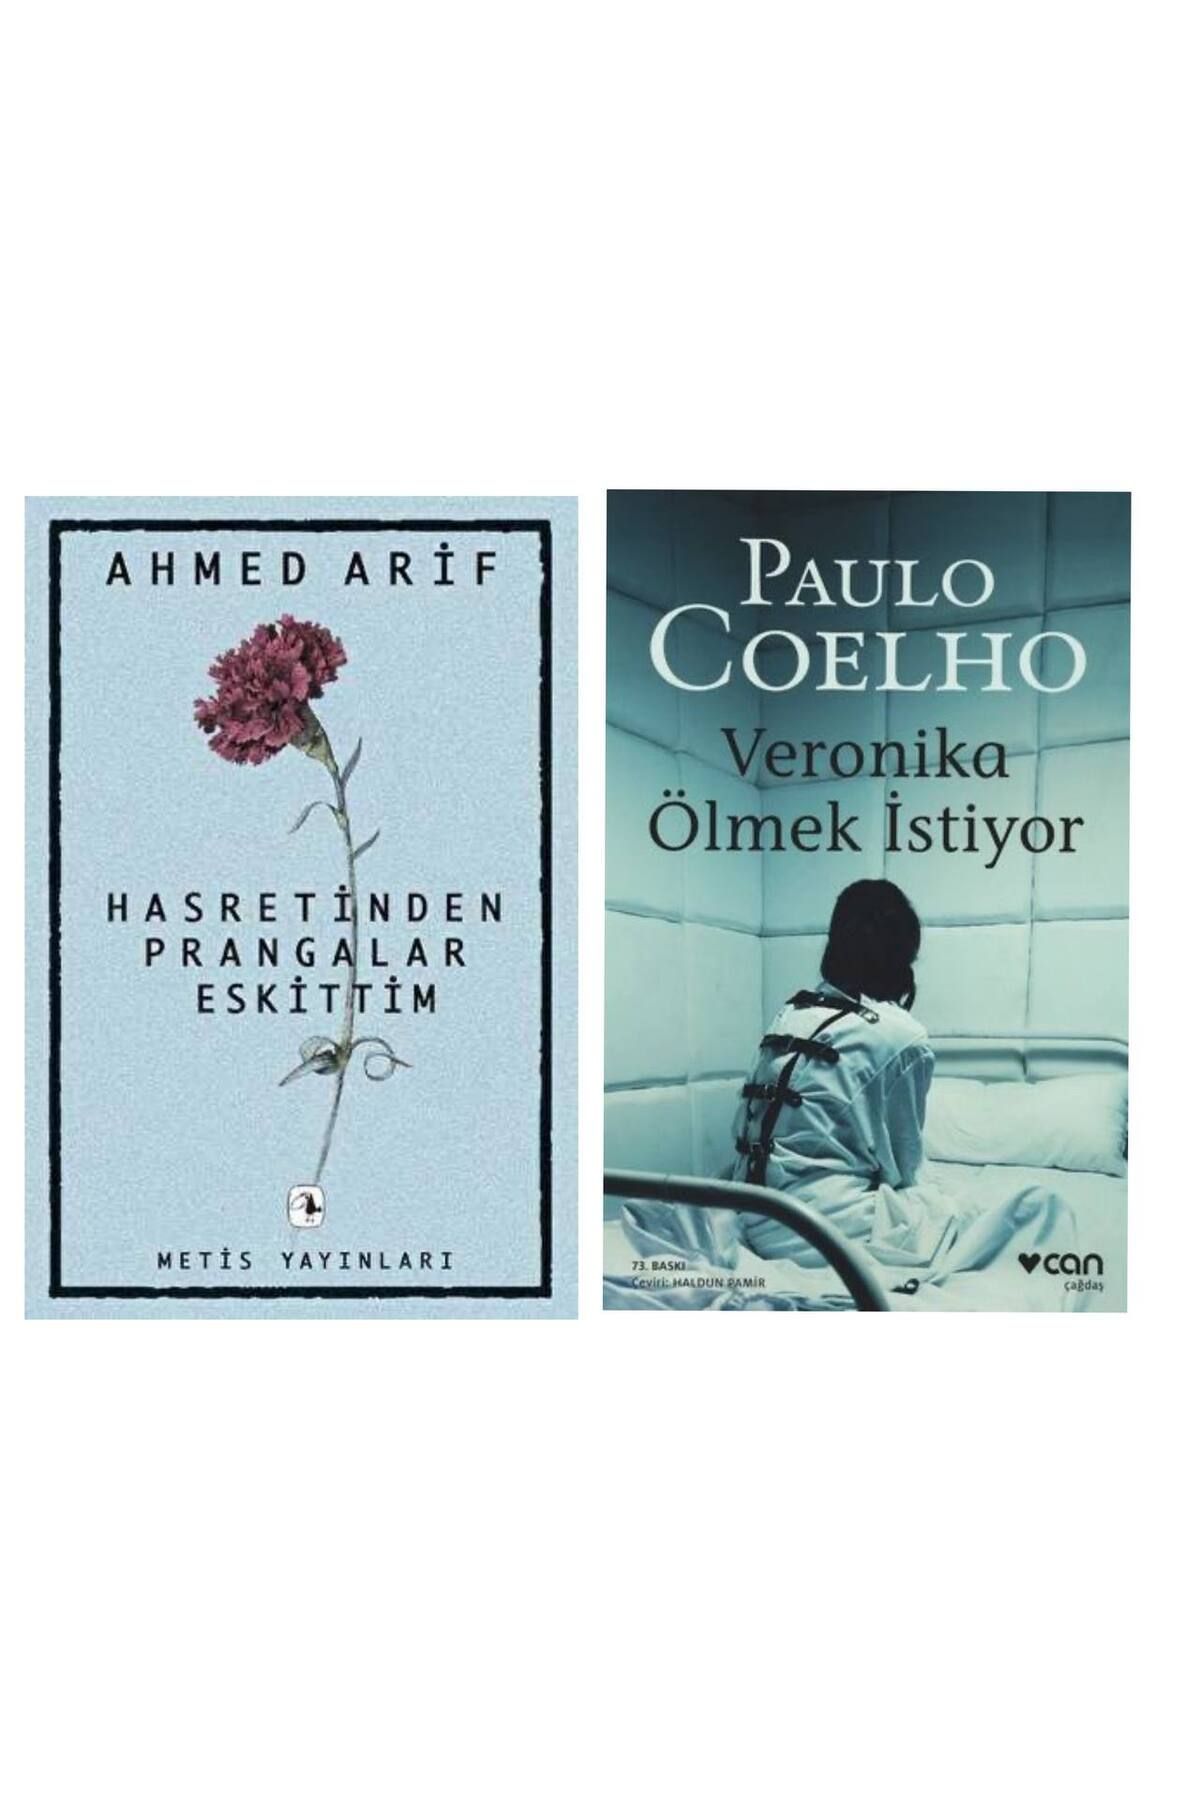 Metis Yayıncılık Hasretin Prangalar Eskittim - Ahmed Arif - Veronika Ölmek İstiyor - Paulo Coelho